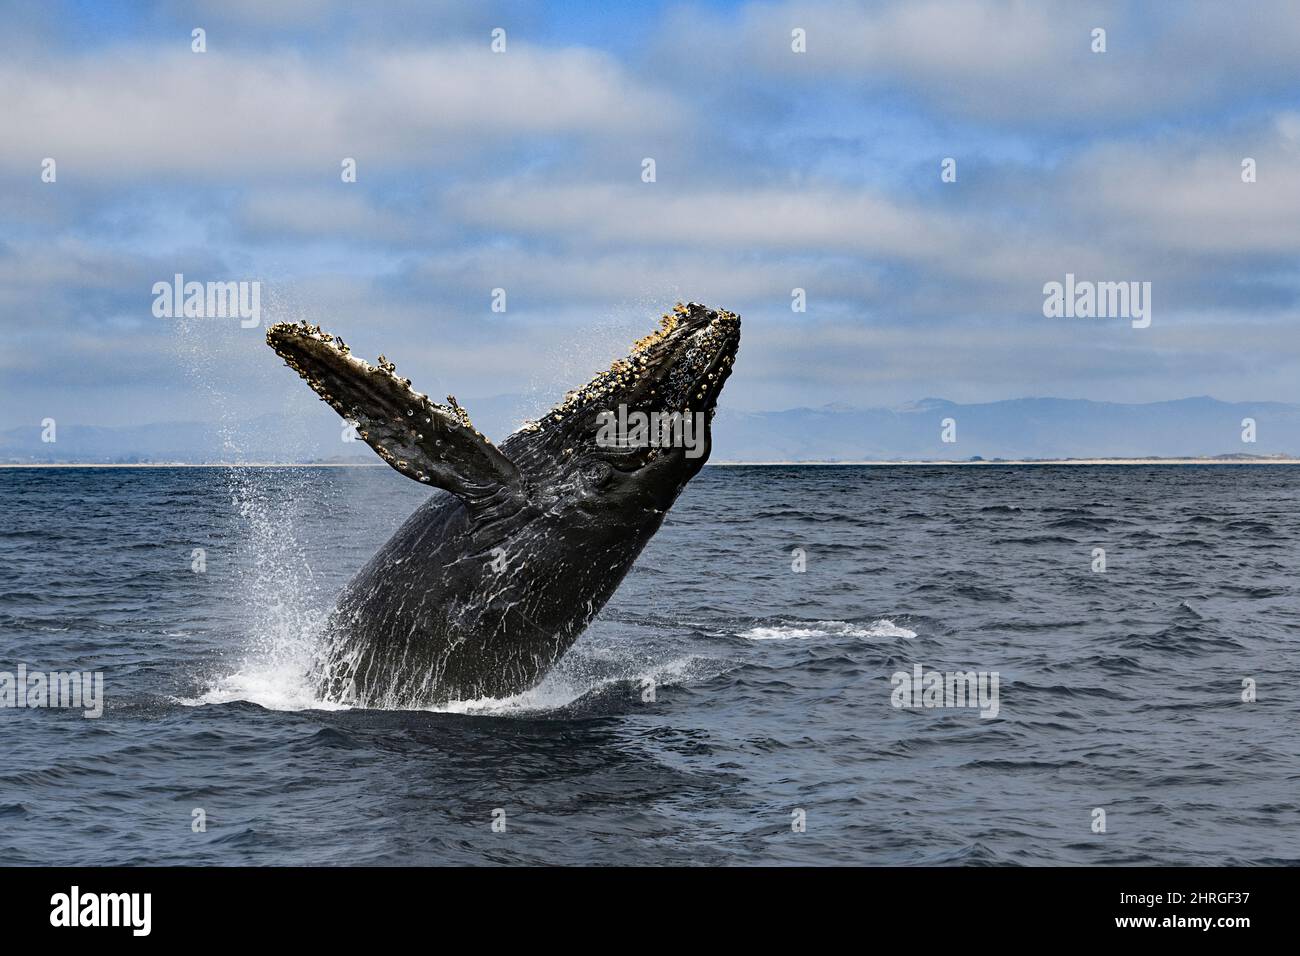 Baleine à bosse, Megaptera novaeangliae, braconnage des veaux, Monterey Bay National Marine Sanctuary, Californie, États-Unis ( Océan Pacifique de l'est ) Banque D'Images